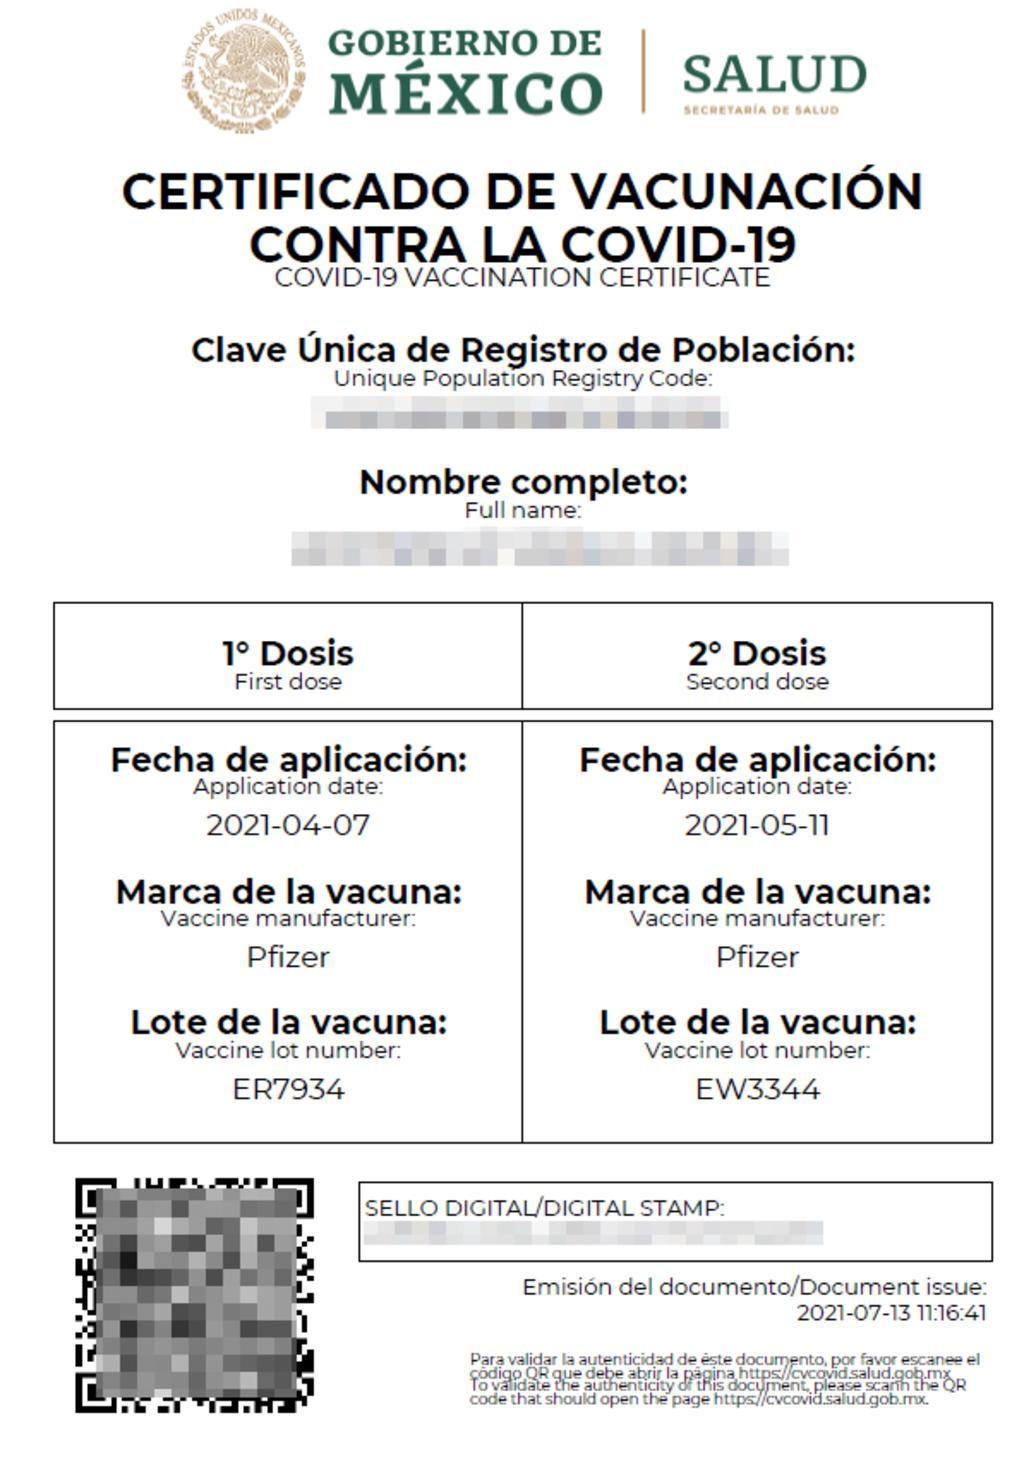 ¿Cómo descargar el certificado de vacunación contra el COVID-19?